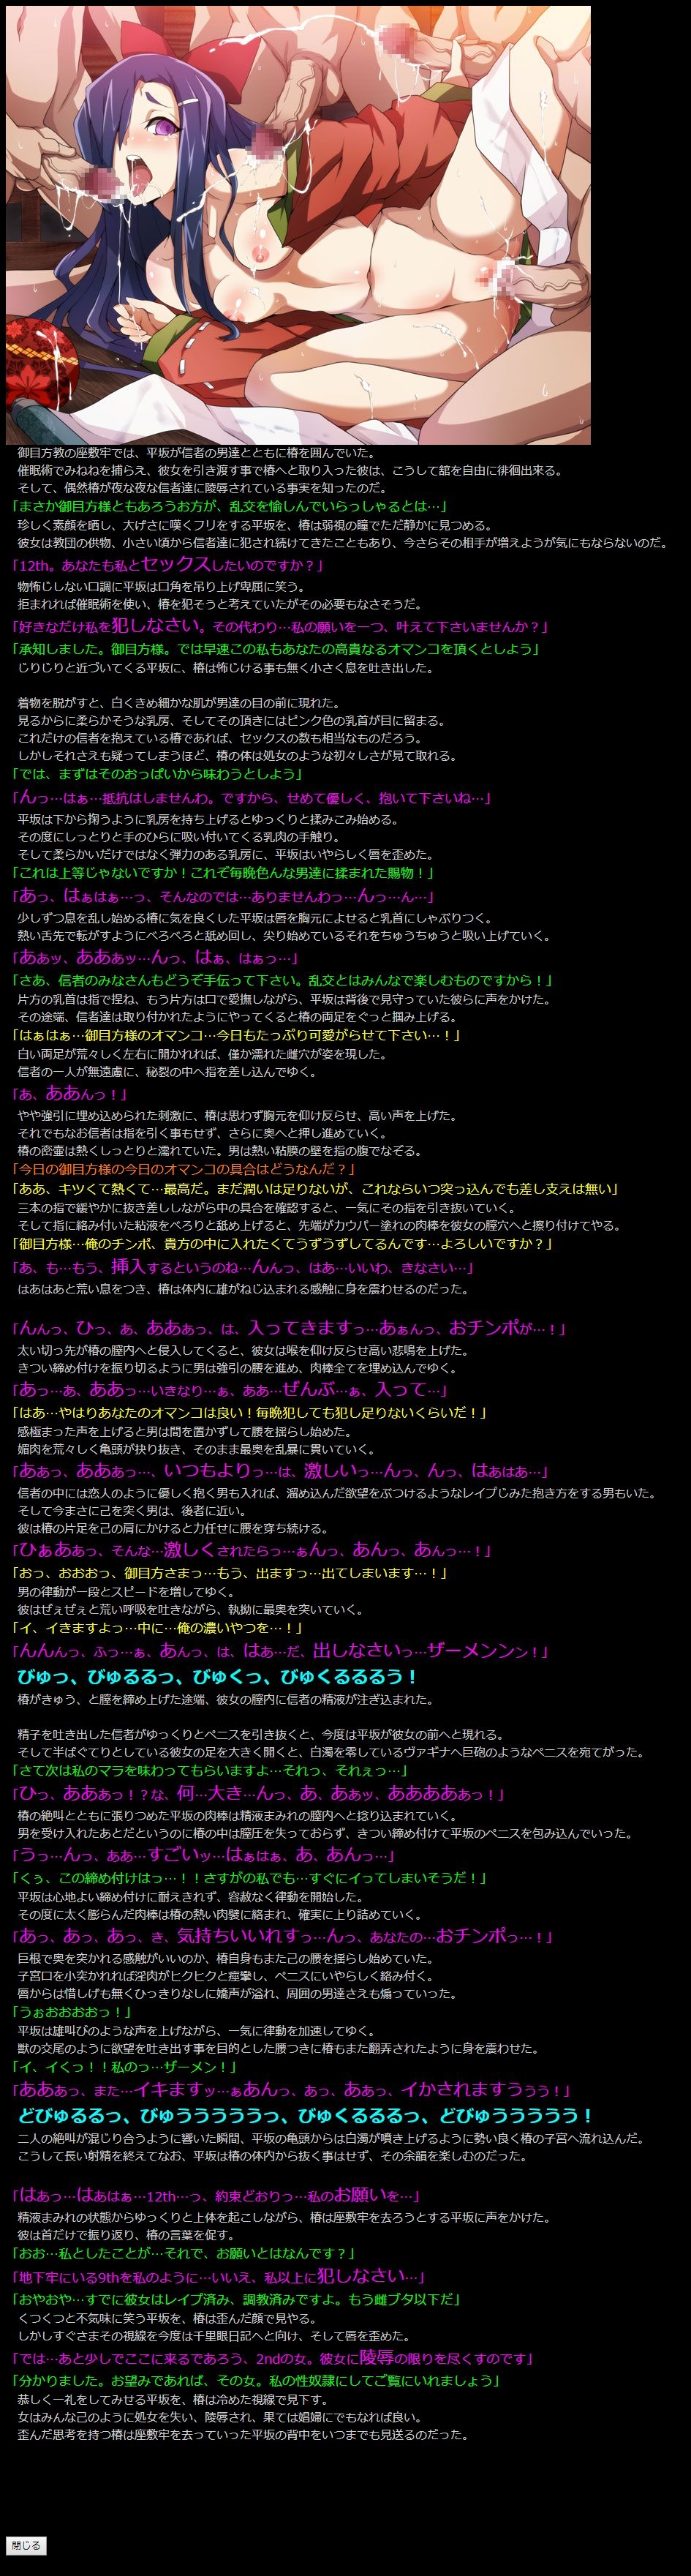 (COMIC1☆6) [LolitaChannel (Arigase Shinji)] Yuumei Chara Kannou Shousetsu CG Shuu No. 218!! Mirai Nikki HaaHaa CG Shuu (Mirai Nikki) 14